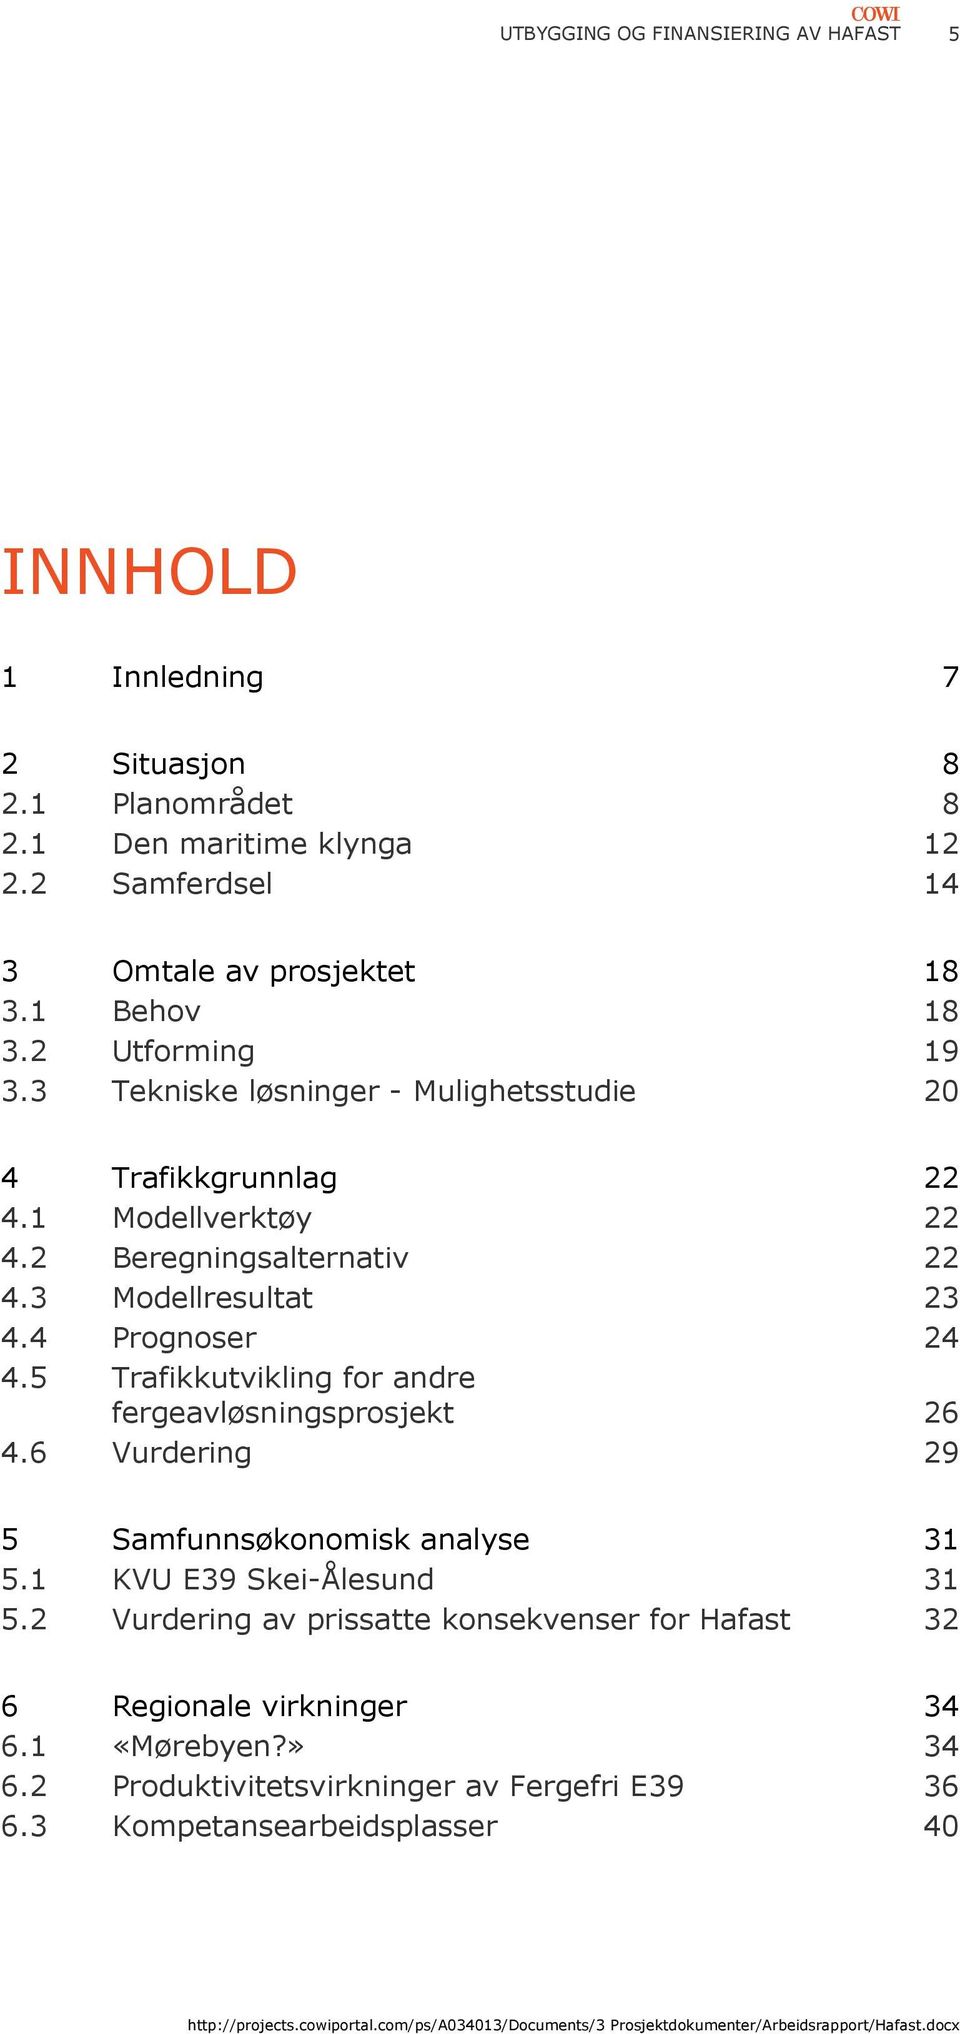 4 Prognoser 24 4.5 Trafikkutvikling for andre fergeavløsningsprosjekt 26 4.6 Vurdering 29 5 Samfunnsøkonomisk analyse 31 5.1 KVU E39 Skei-Ålesund 31 5.